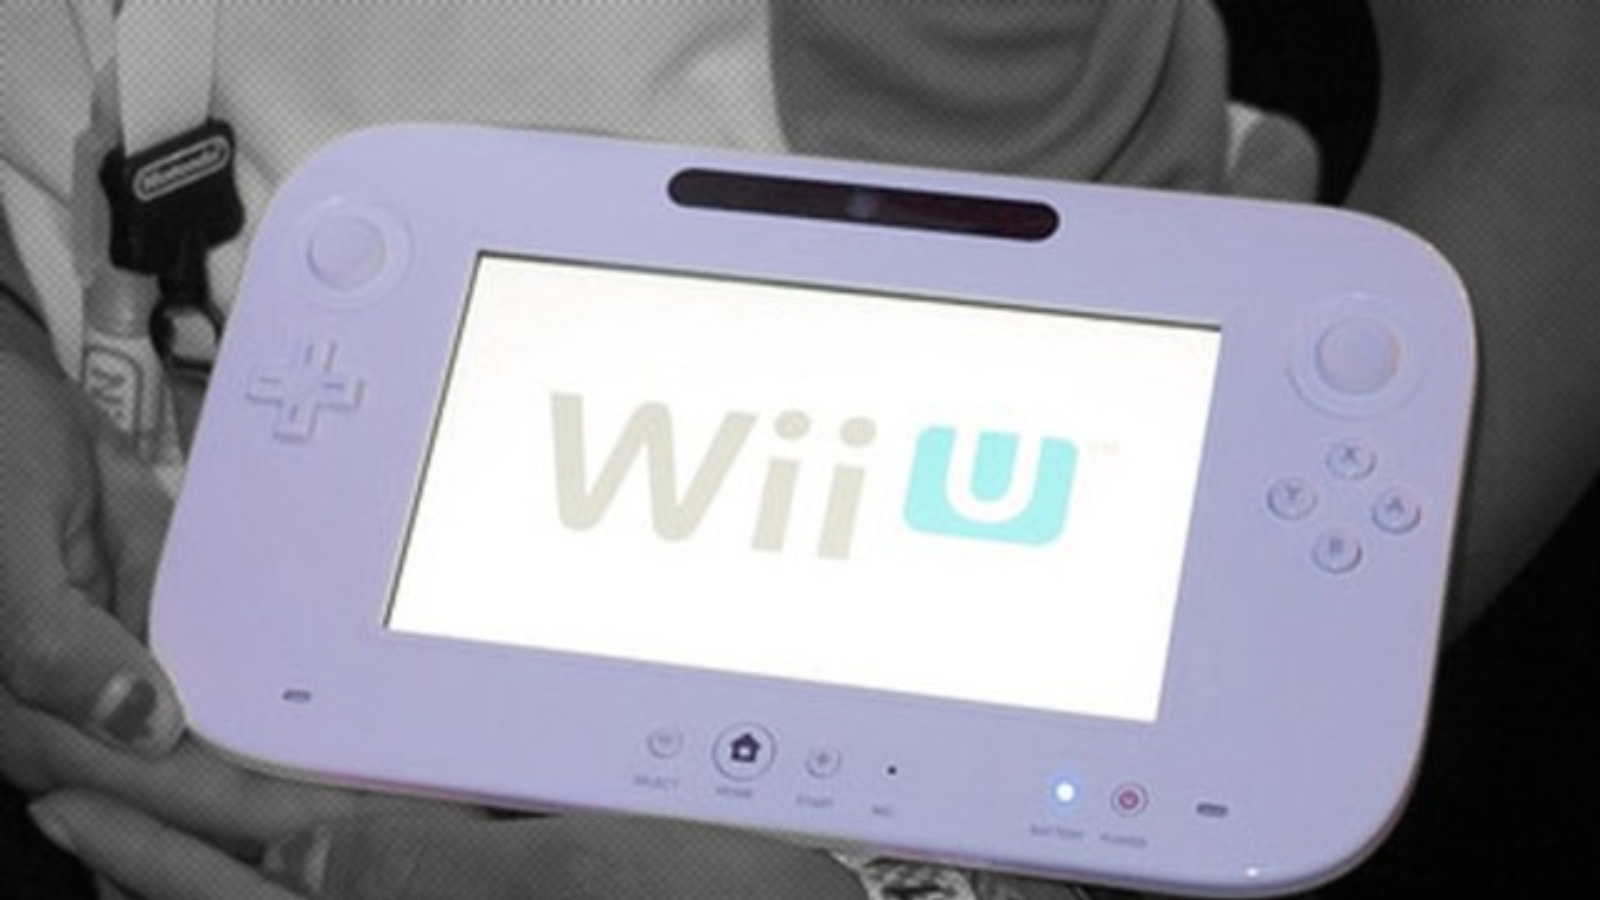 Nintendo eShops de 3DS e Wii U estendem período de resgate de